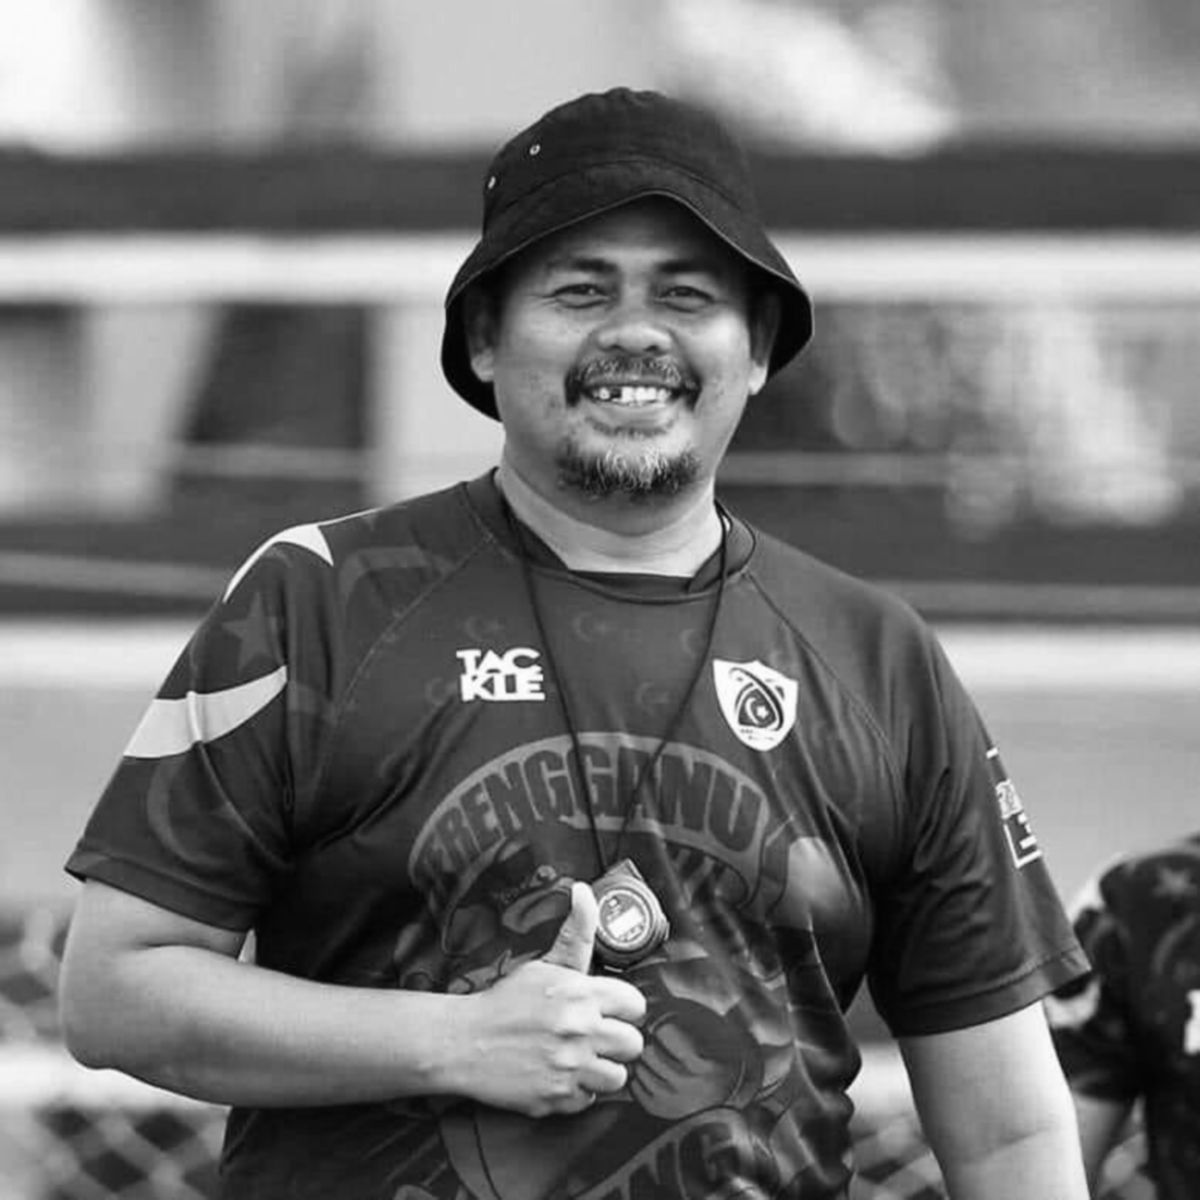 Ketua jurulatih ragbi Terengganu, Izaimi Zainuddin menghembuskan nafas terakhir petang hari ini akibat jangkitan kuman. FOTO Ihsan PRNT